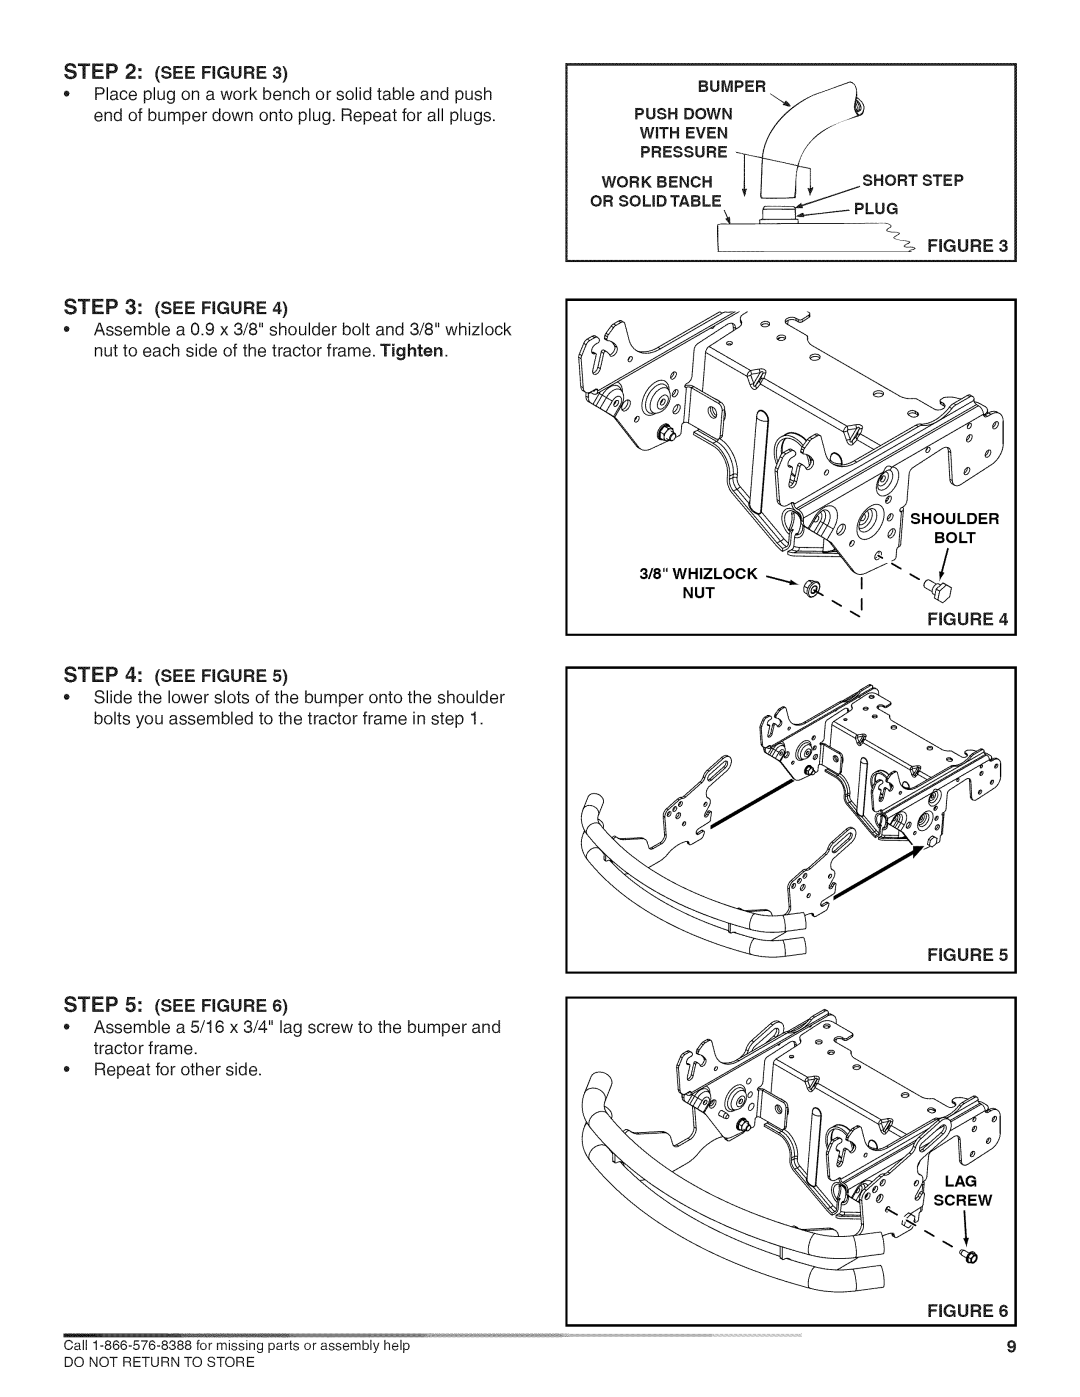 Craftsman 486.24611, 486.24612 manual See Figure, Work Bench, Shoulder Bolt 